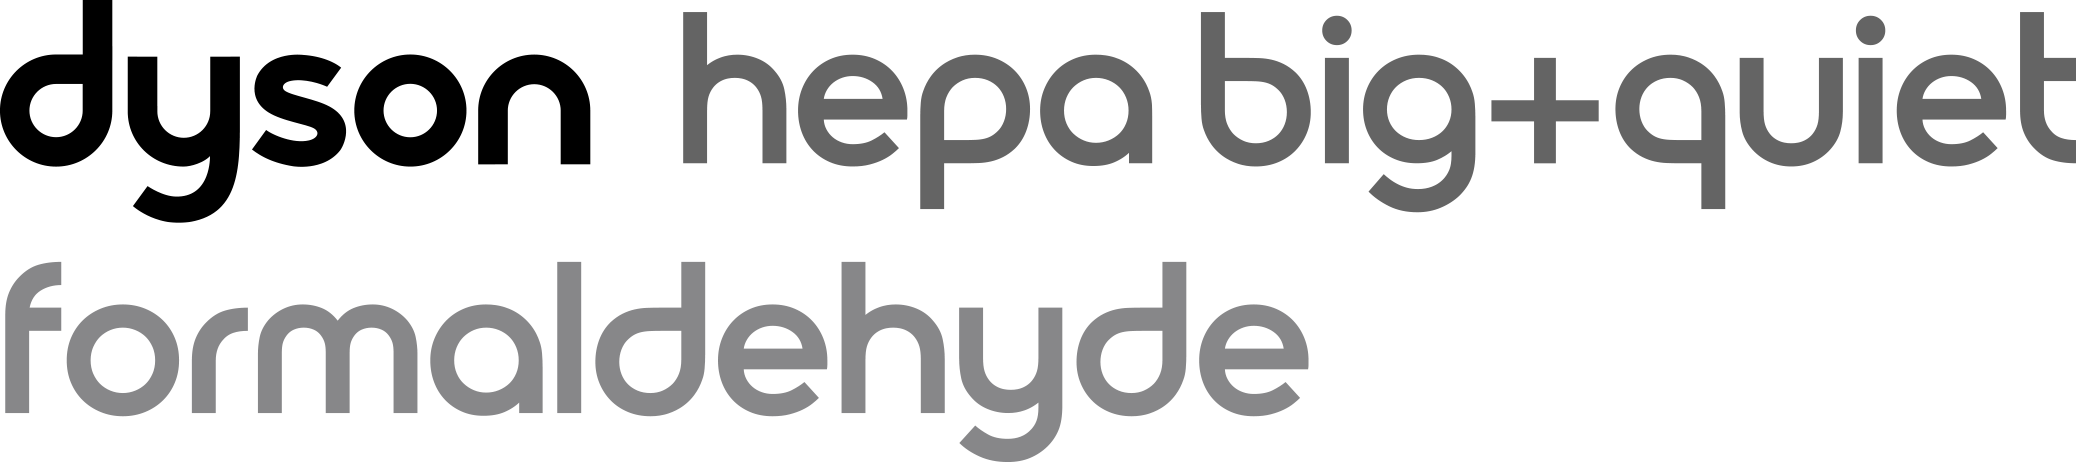 Dyson HEPA Big+Quiet Formaldehyde logo